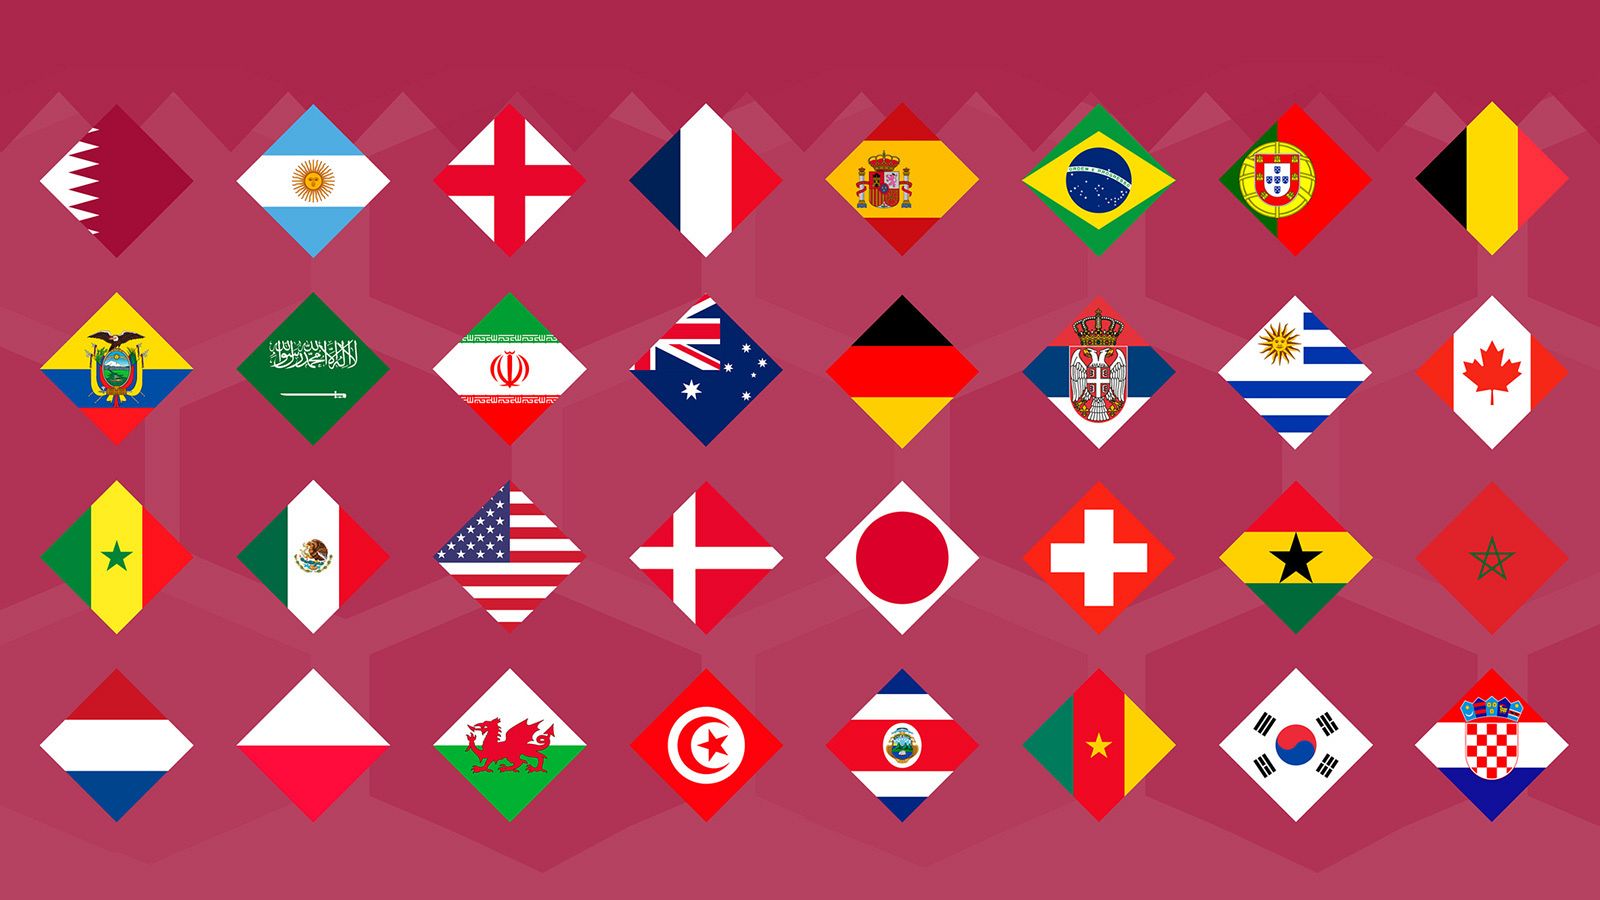 ¿Quién ganará el Mundial? En la imagen, las 32 selecciones participantes en el Mundial de fútbol 2022